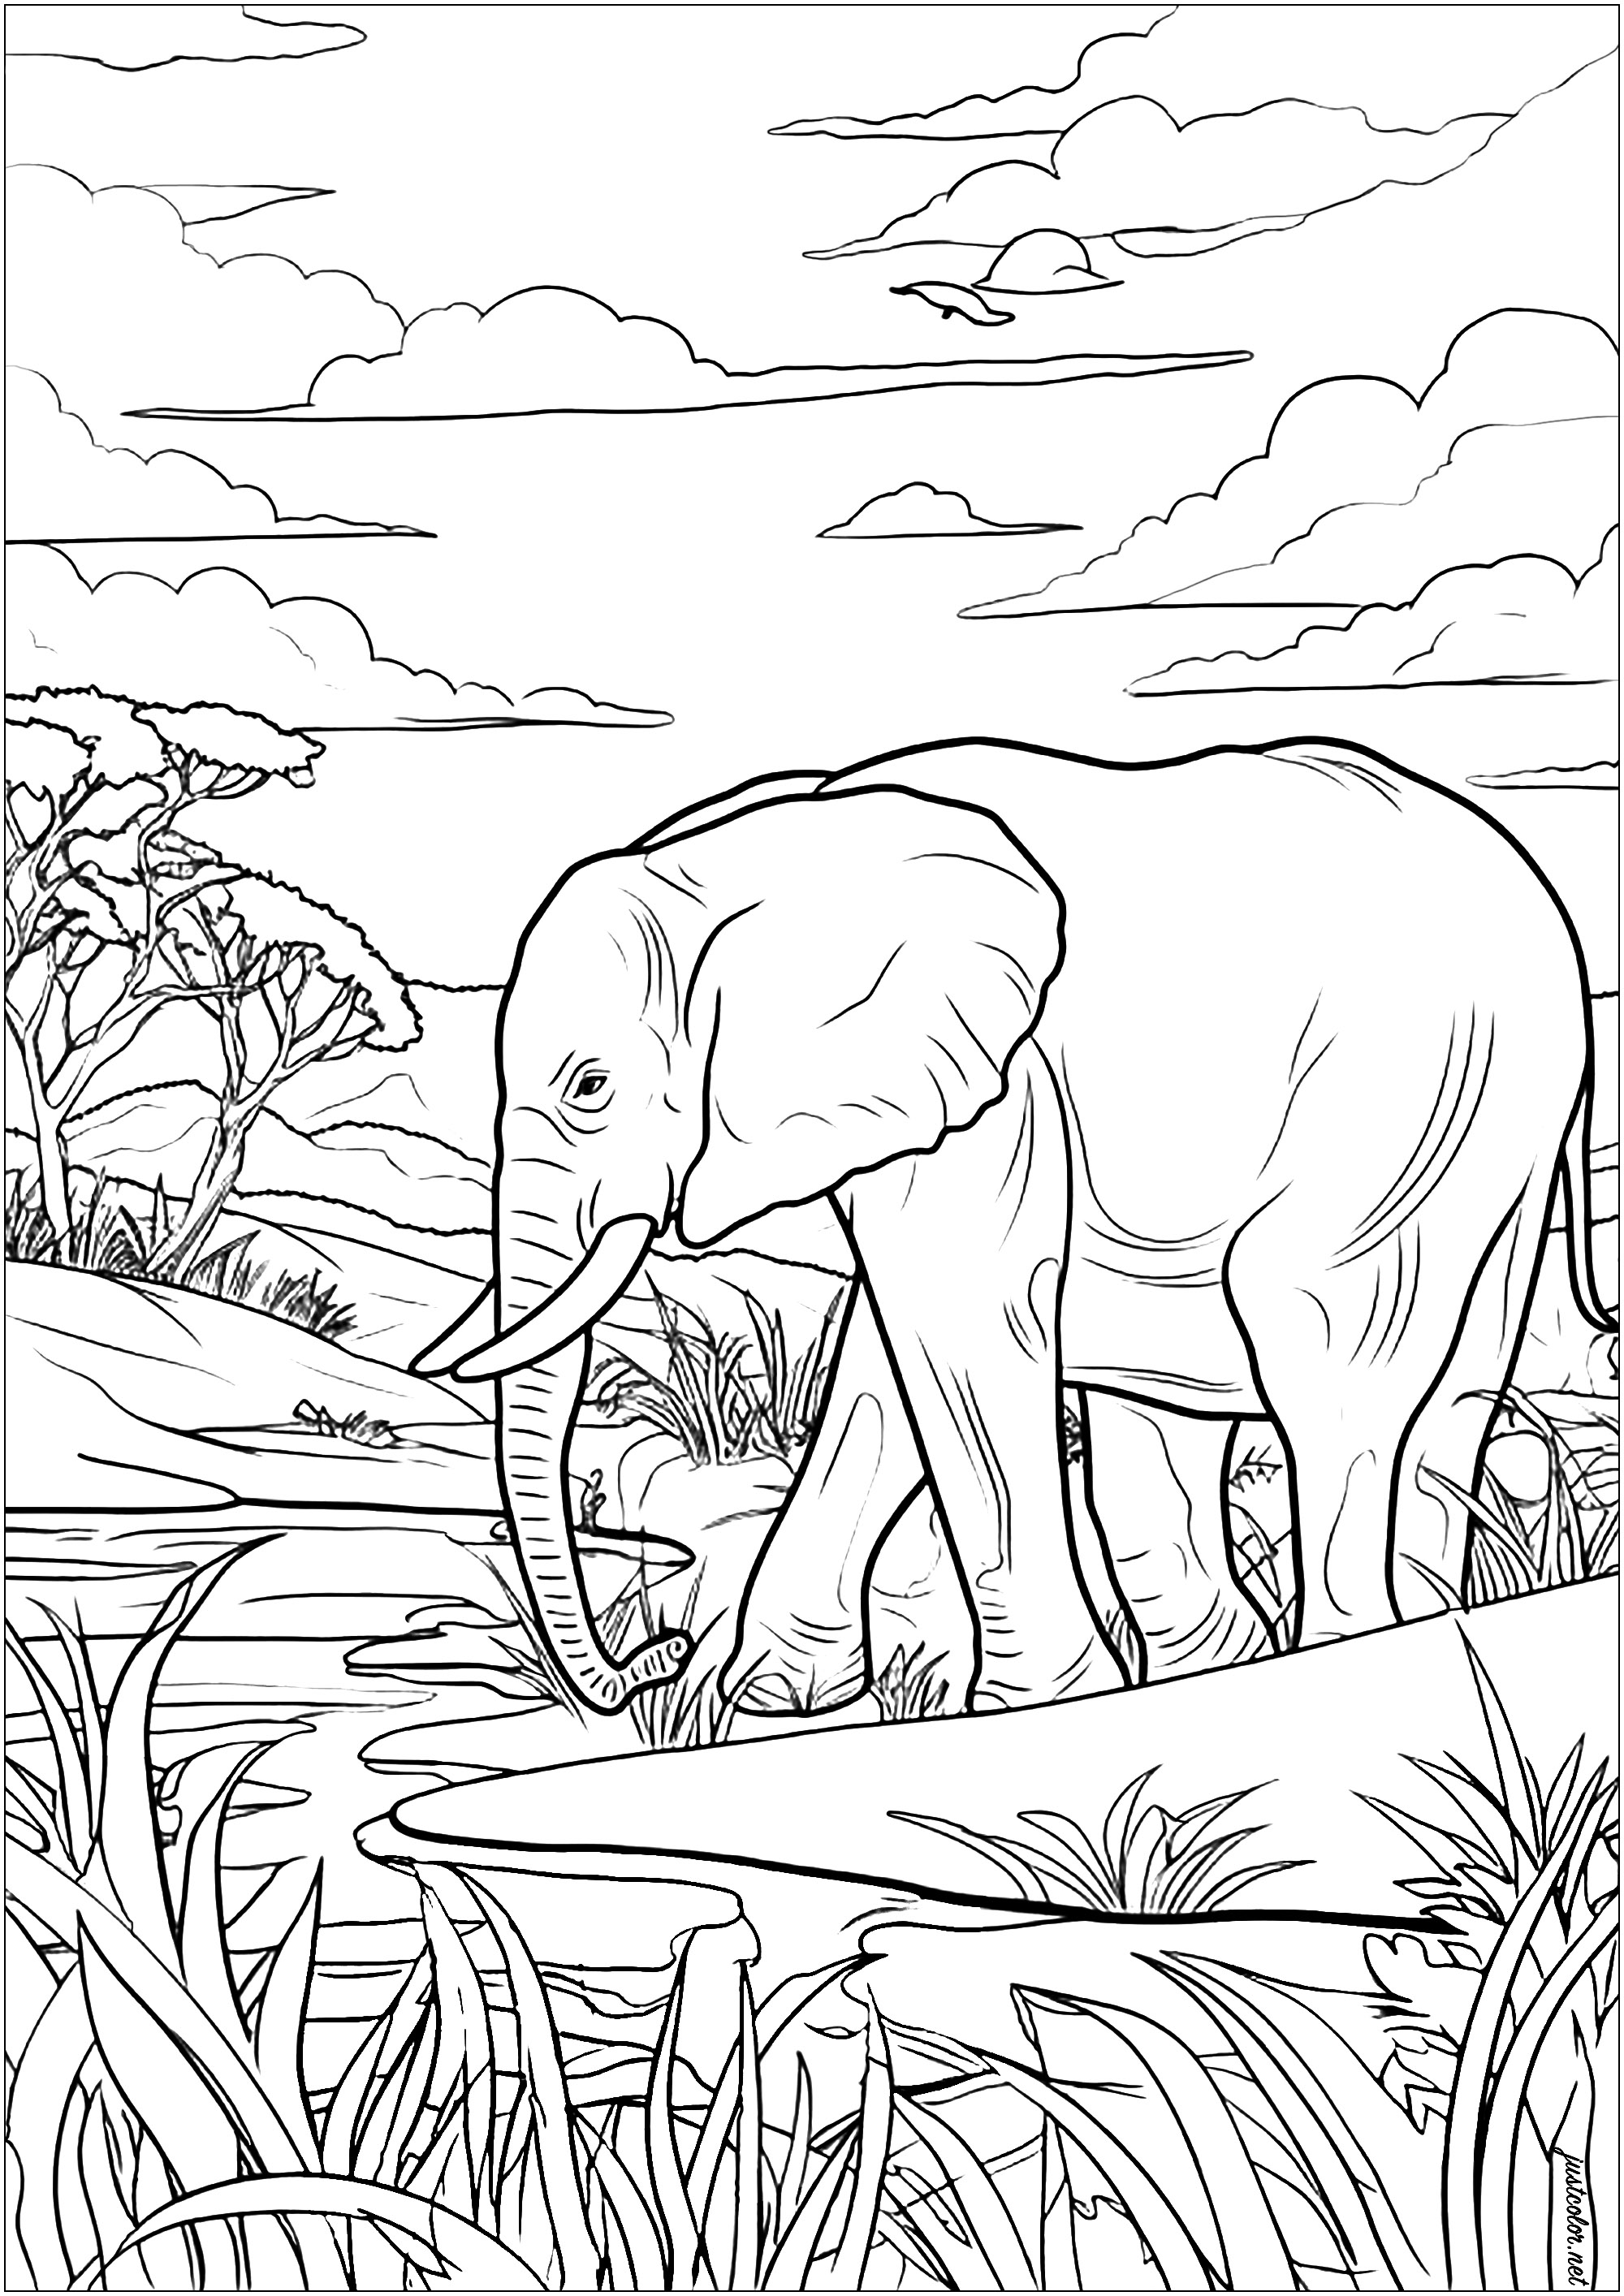 Coloreado de un viejo elefante moviéndose tranquilamente por la sabana africana. Una página para colorear llena de detalles, muy relajante. Este sabio paquidermo avanza a zancadas majestuosas, contemplando los árboles y las hierbas que le rodean.